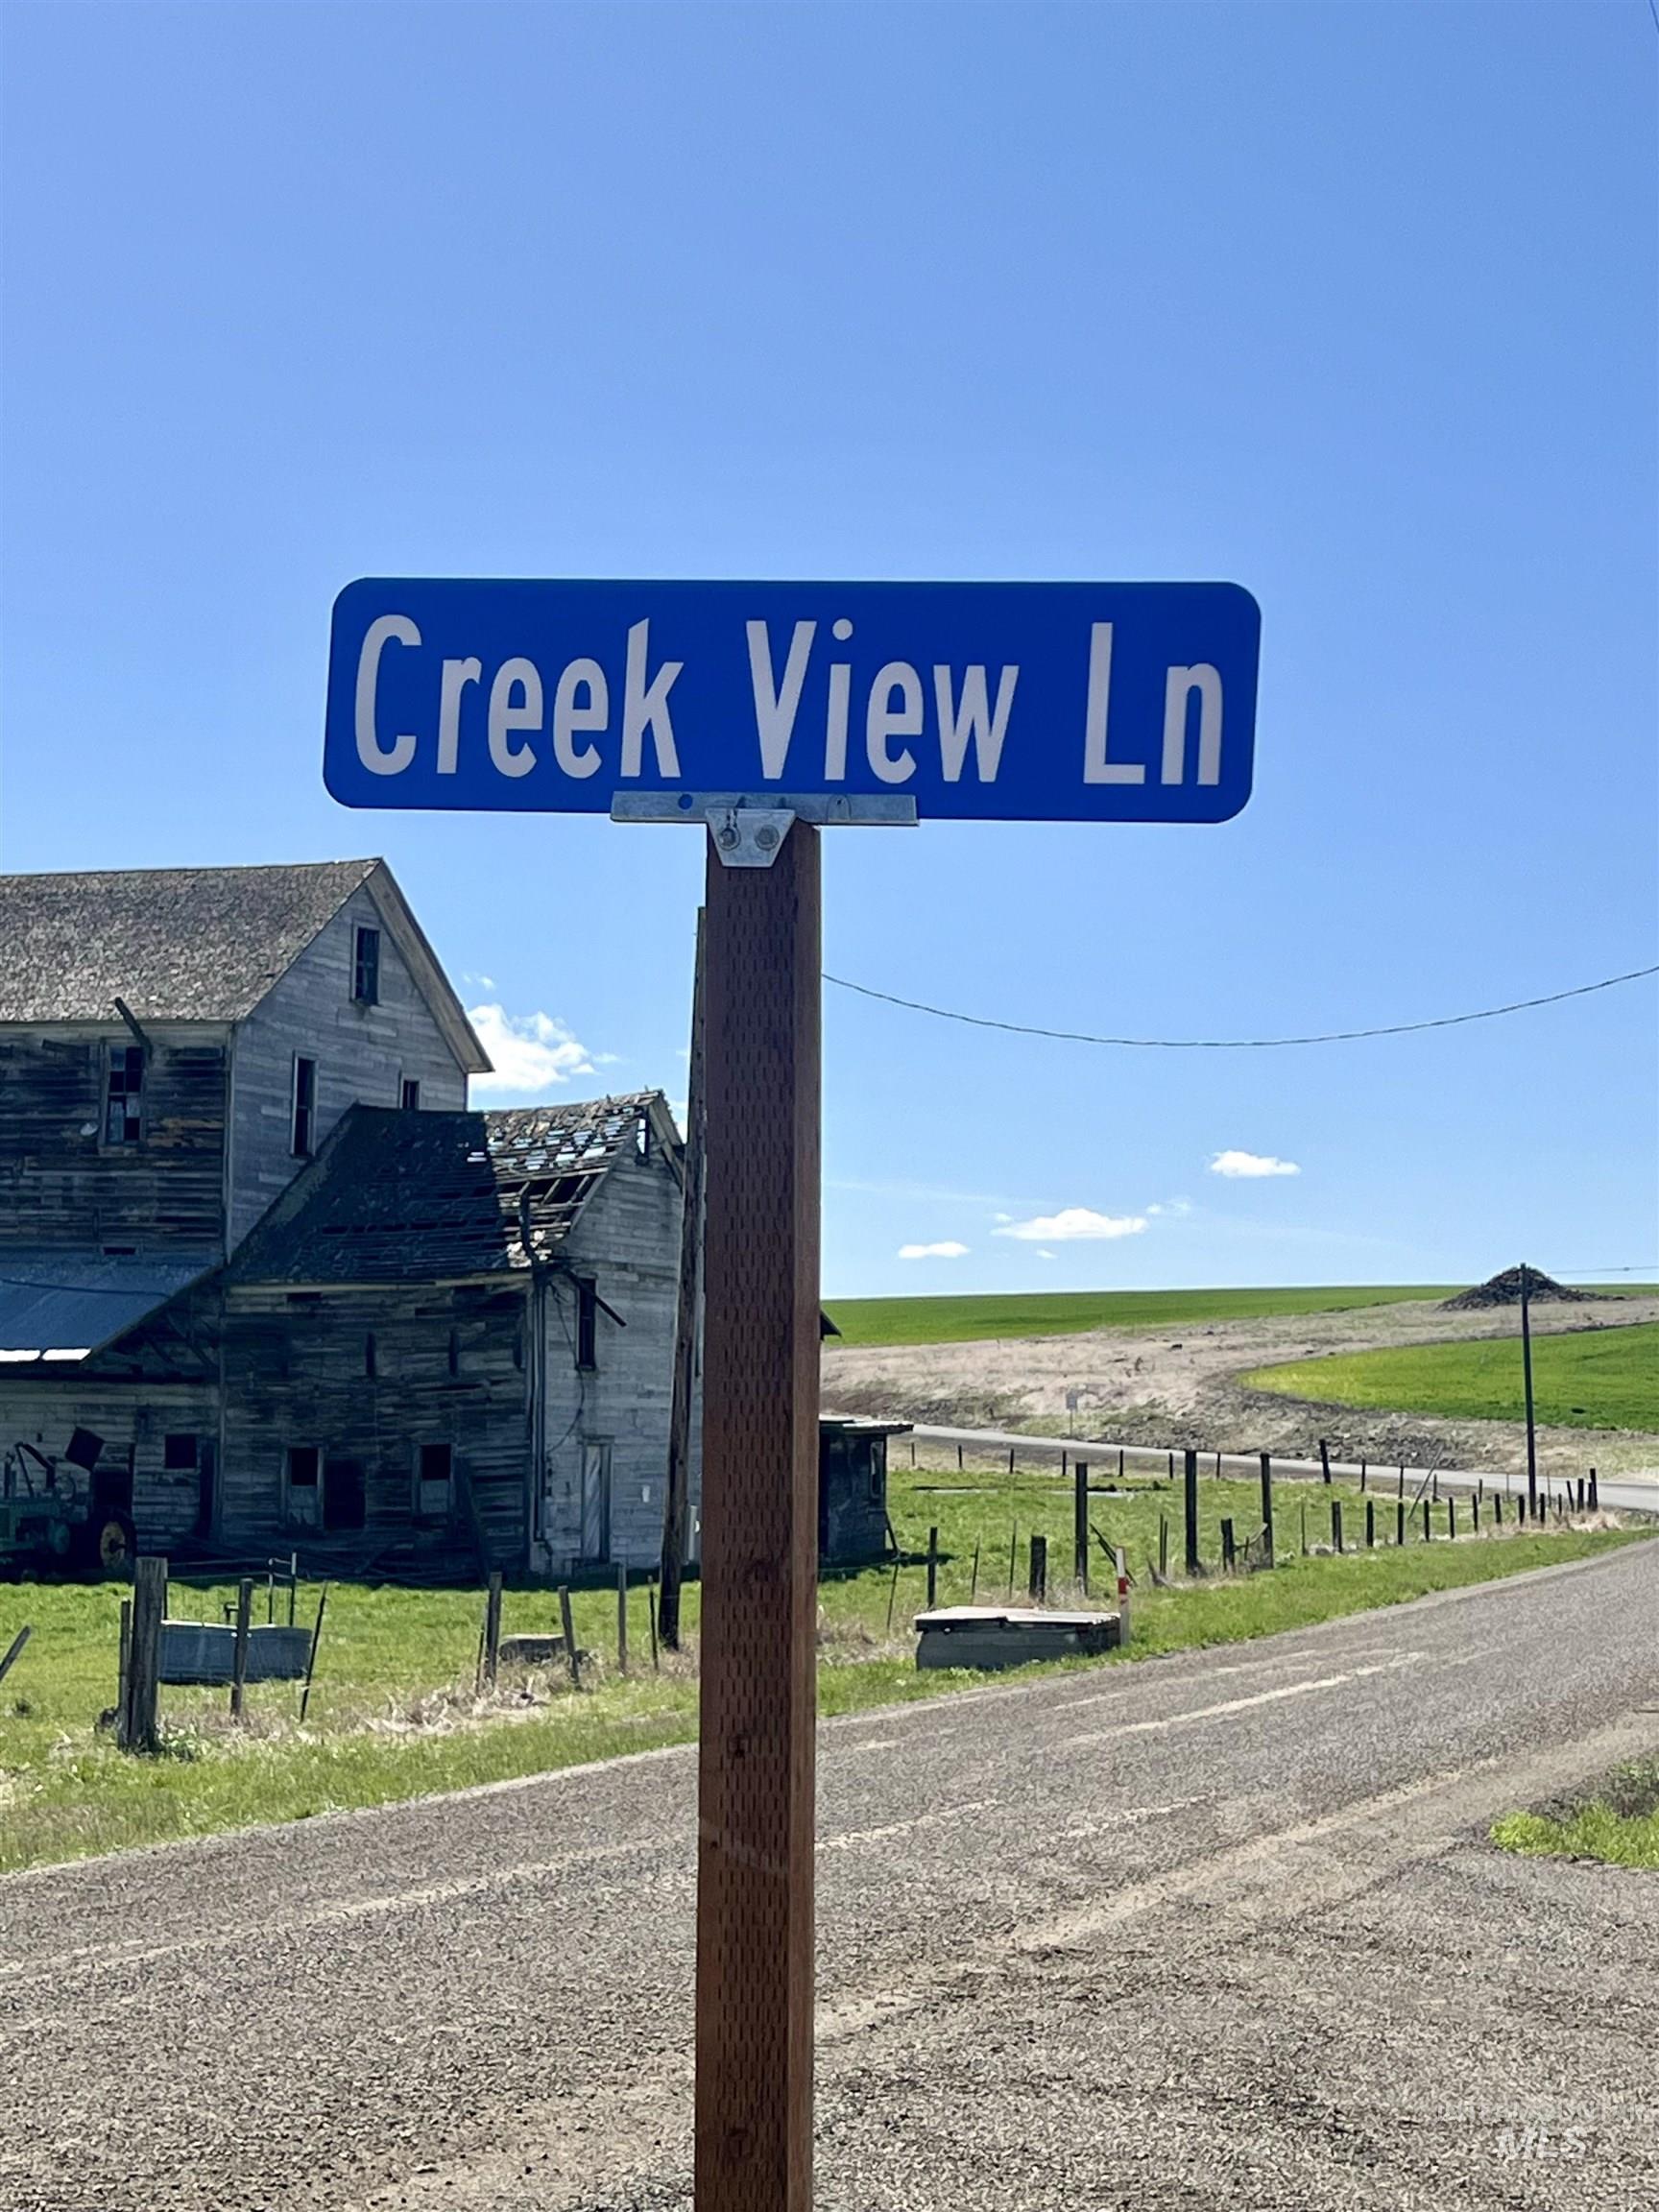 TBD Creek View Lane - Lot 4, Grangeville, Idaho 83530, Land For Sale, Price $189,900,MLS 98907575